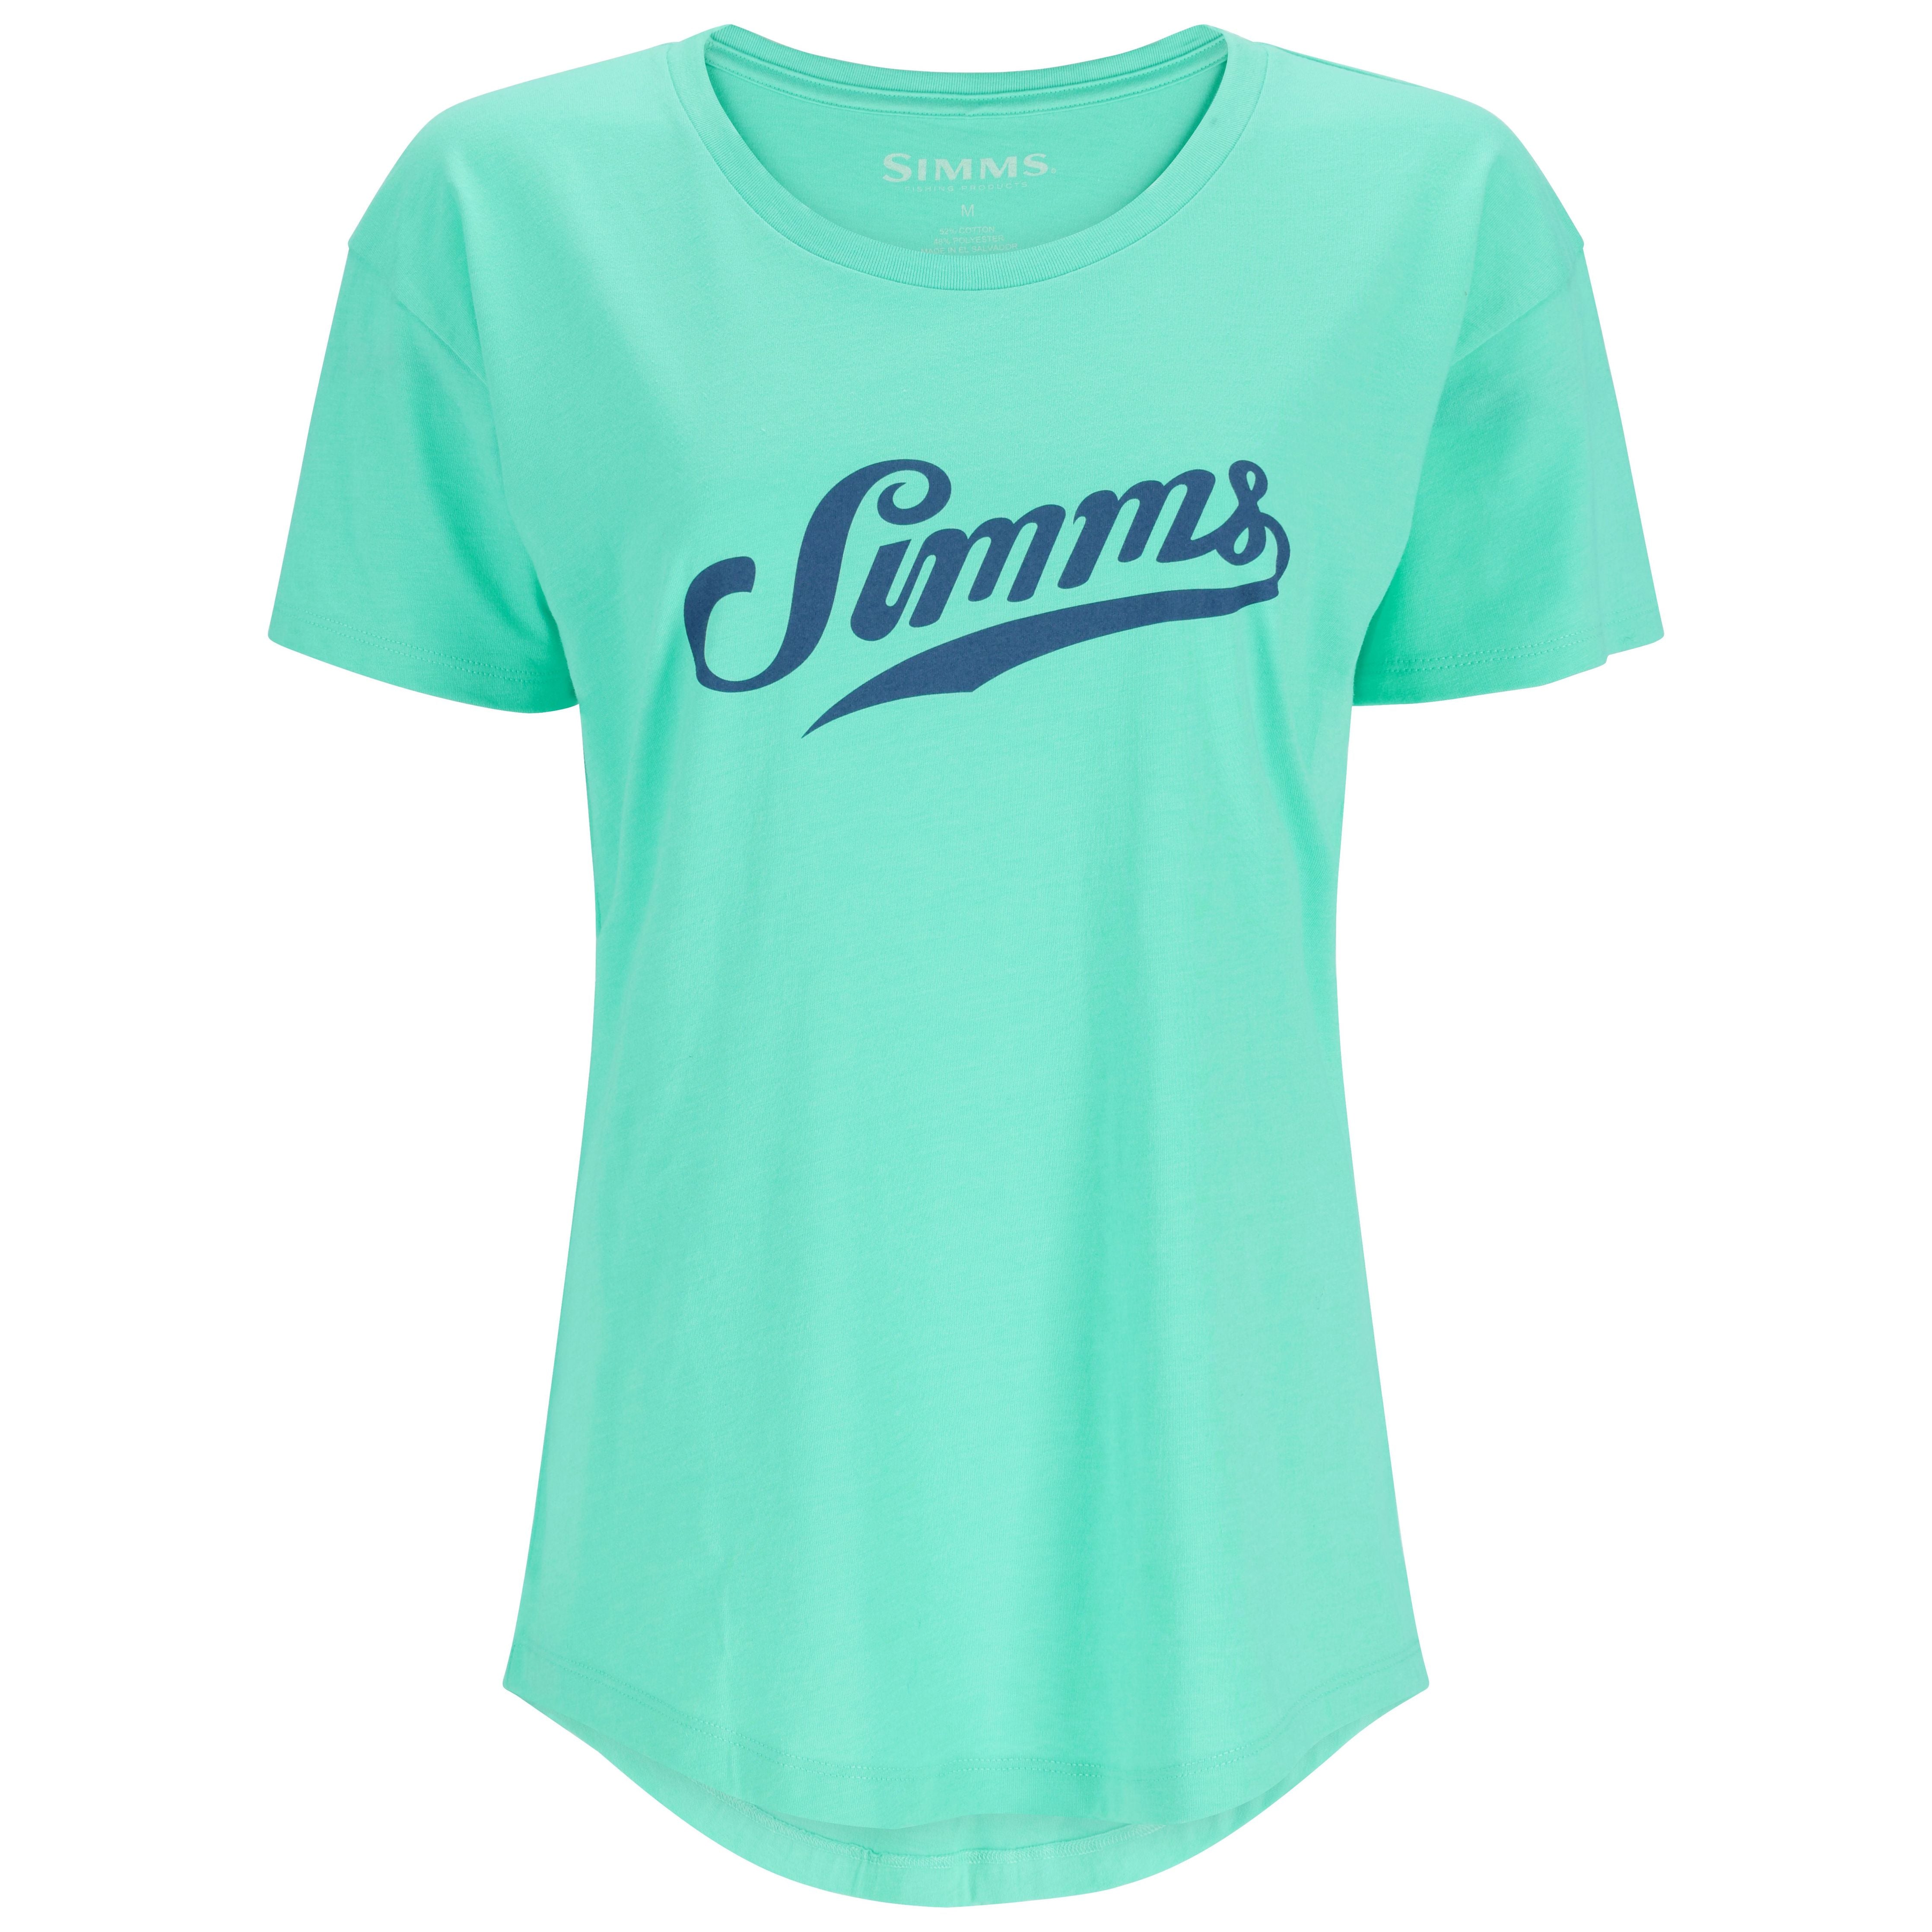 Simms Women's Script T-Shirt Gulf Blue Image 01